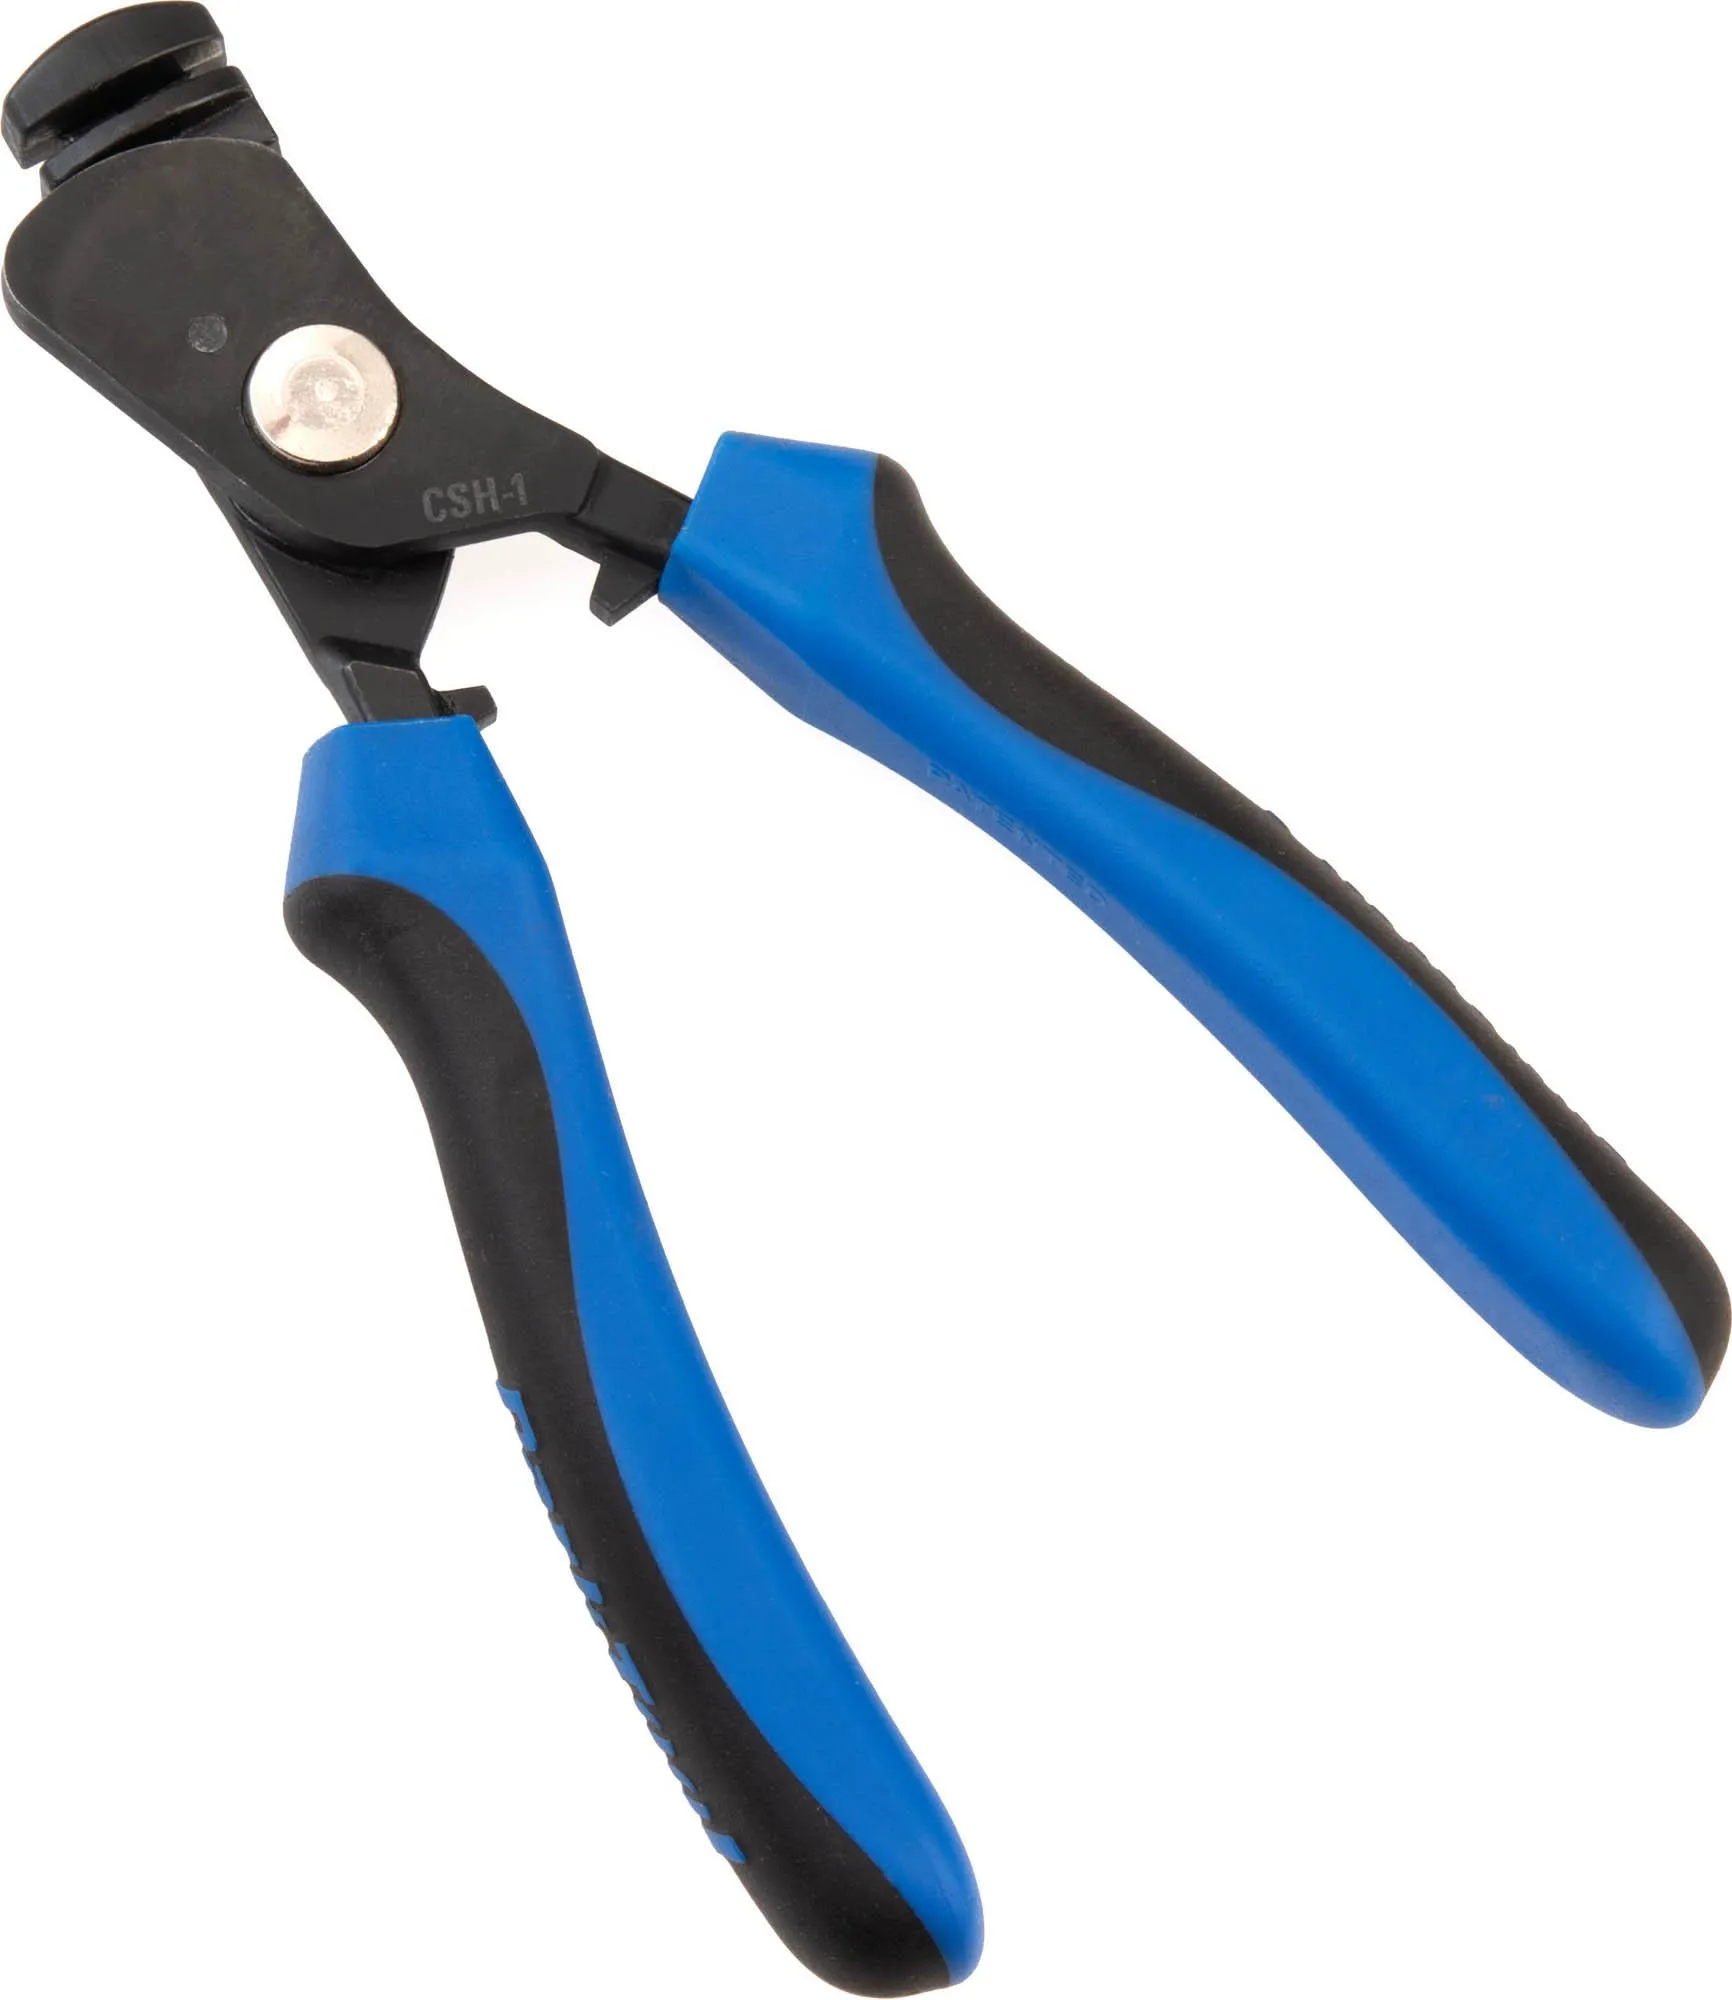  Clamping Spoke Holder CSH-1, Blue/Black